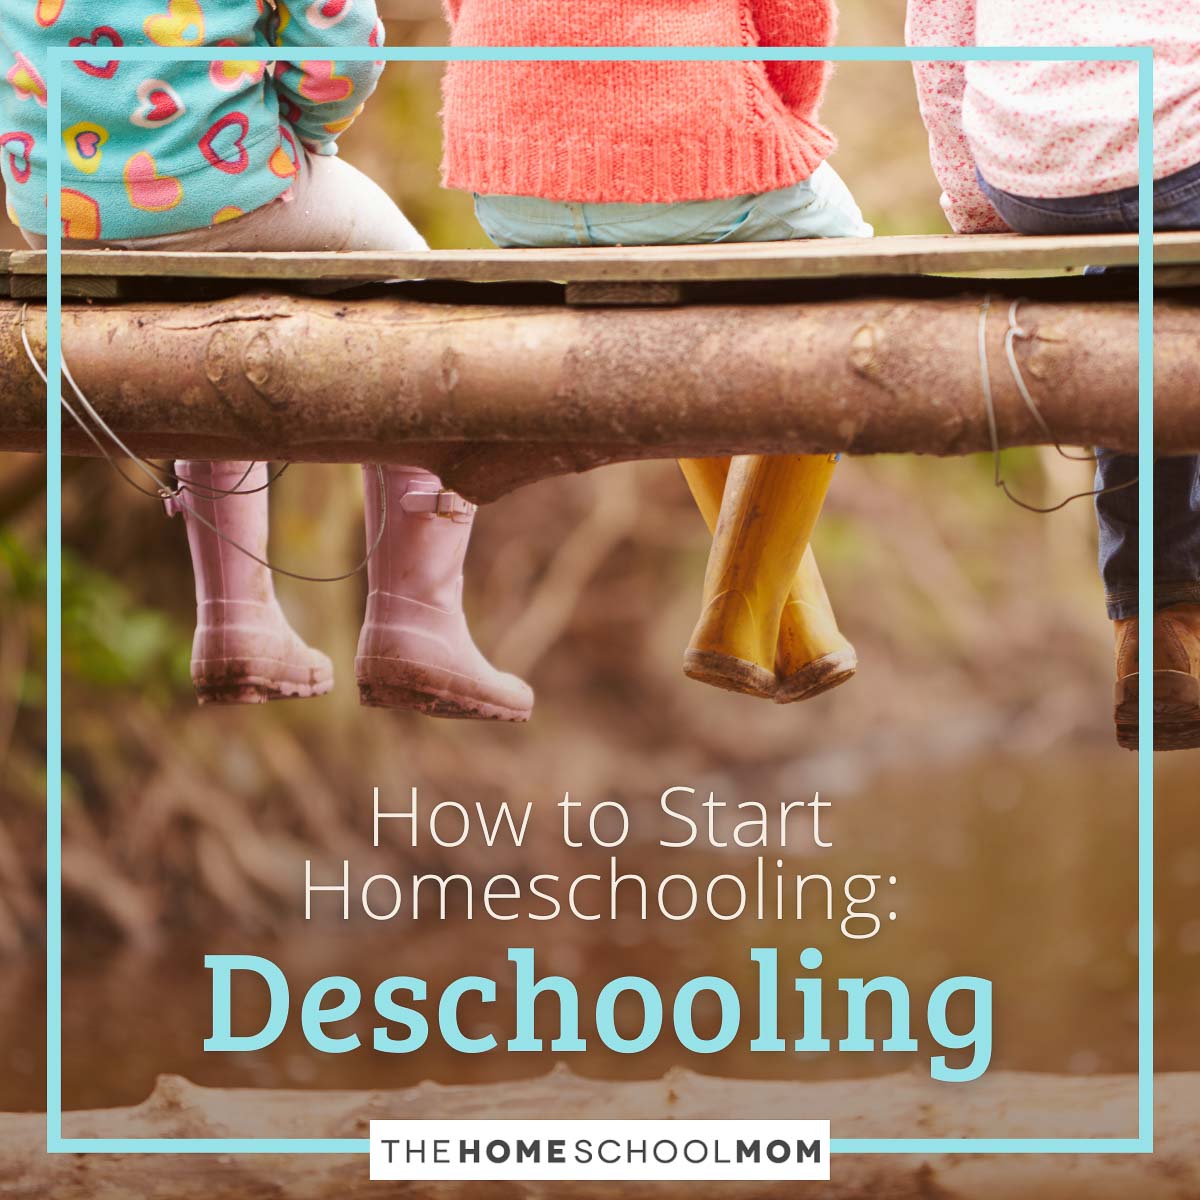 How to Start Homeschooling: Deschooling